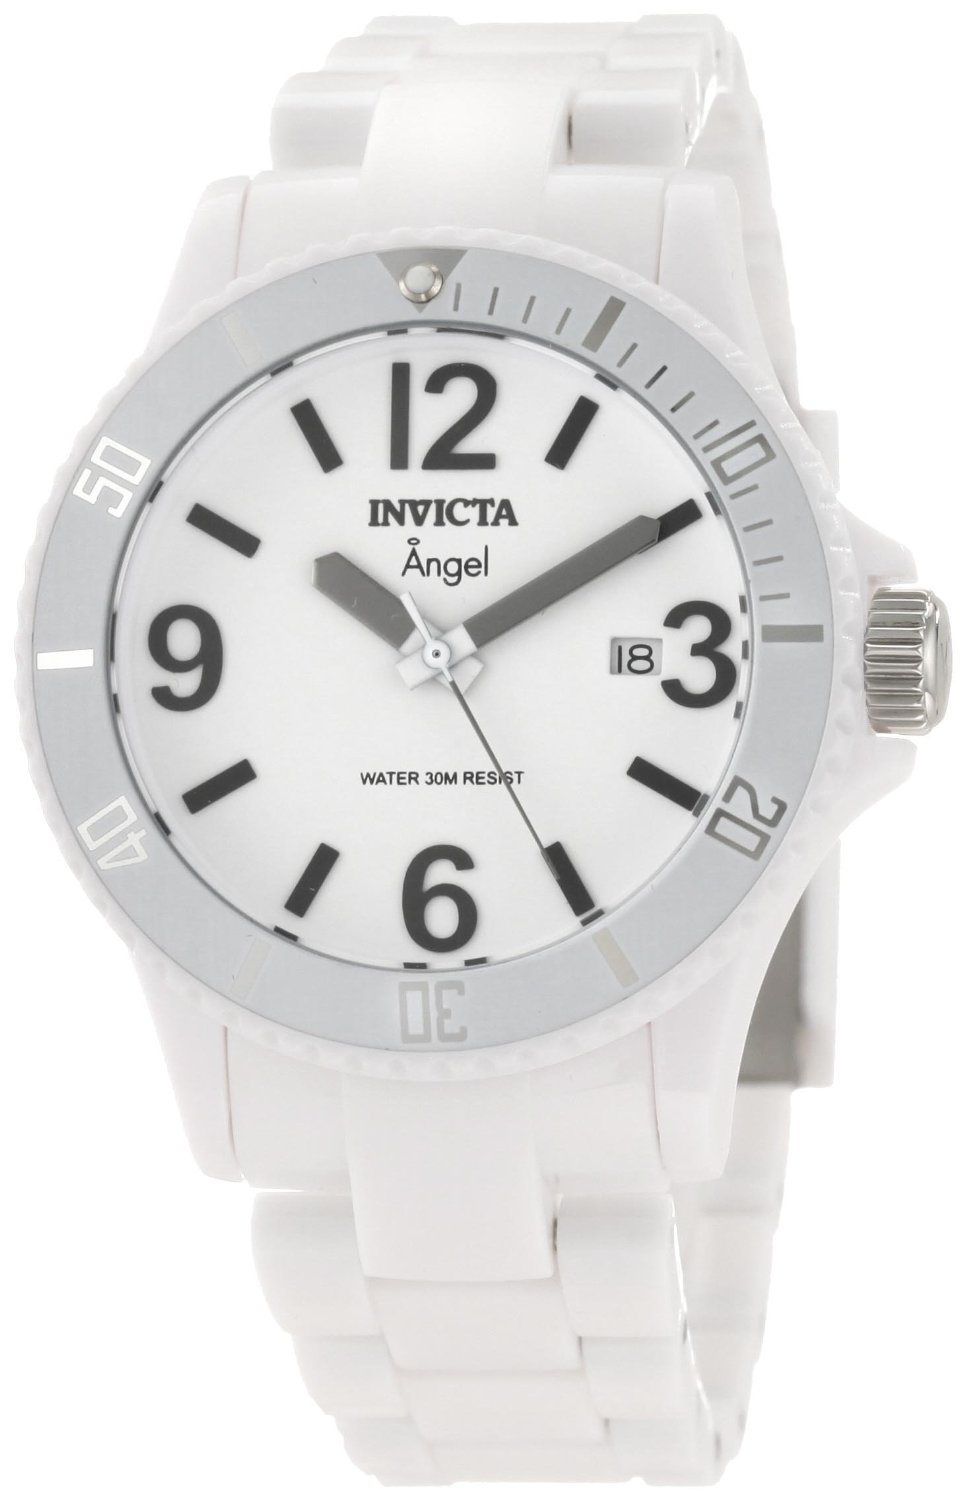 Dámske hodinky INVICTA Angel 1207